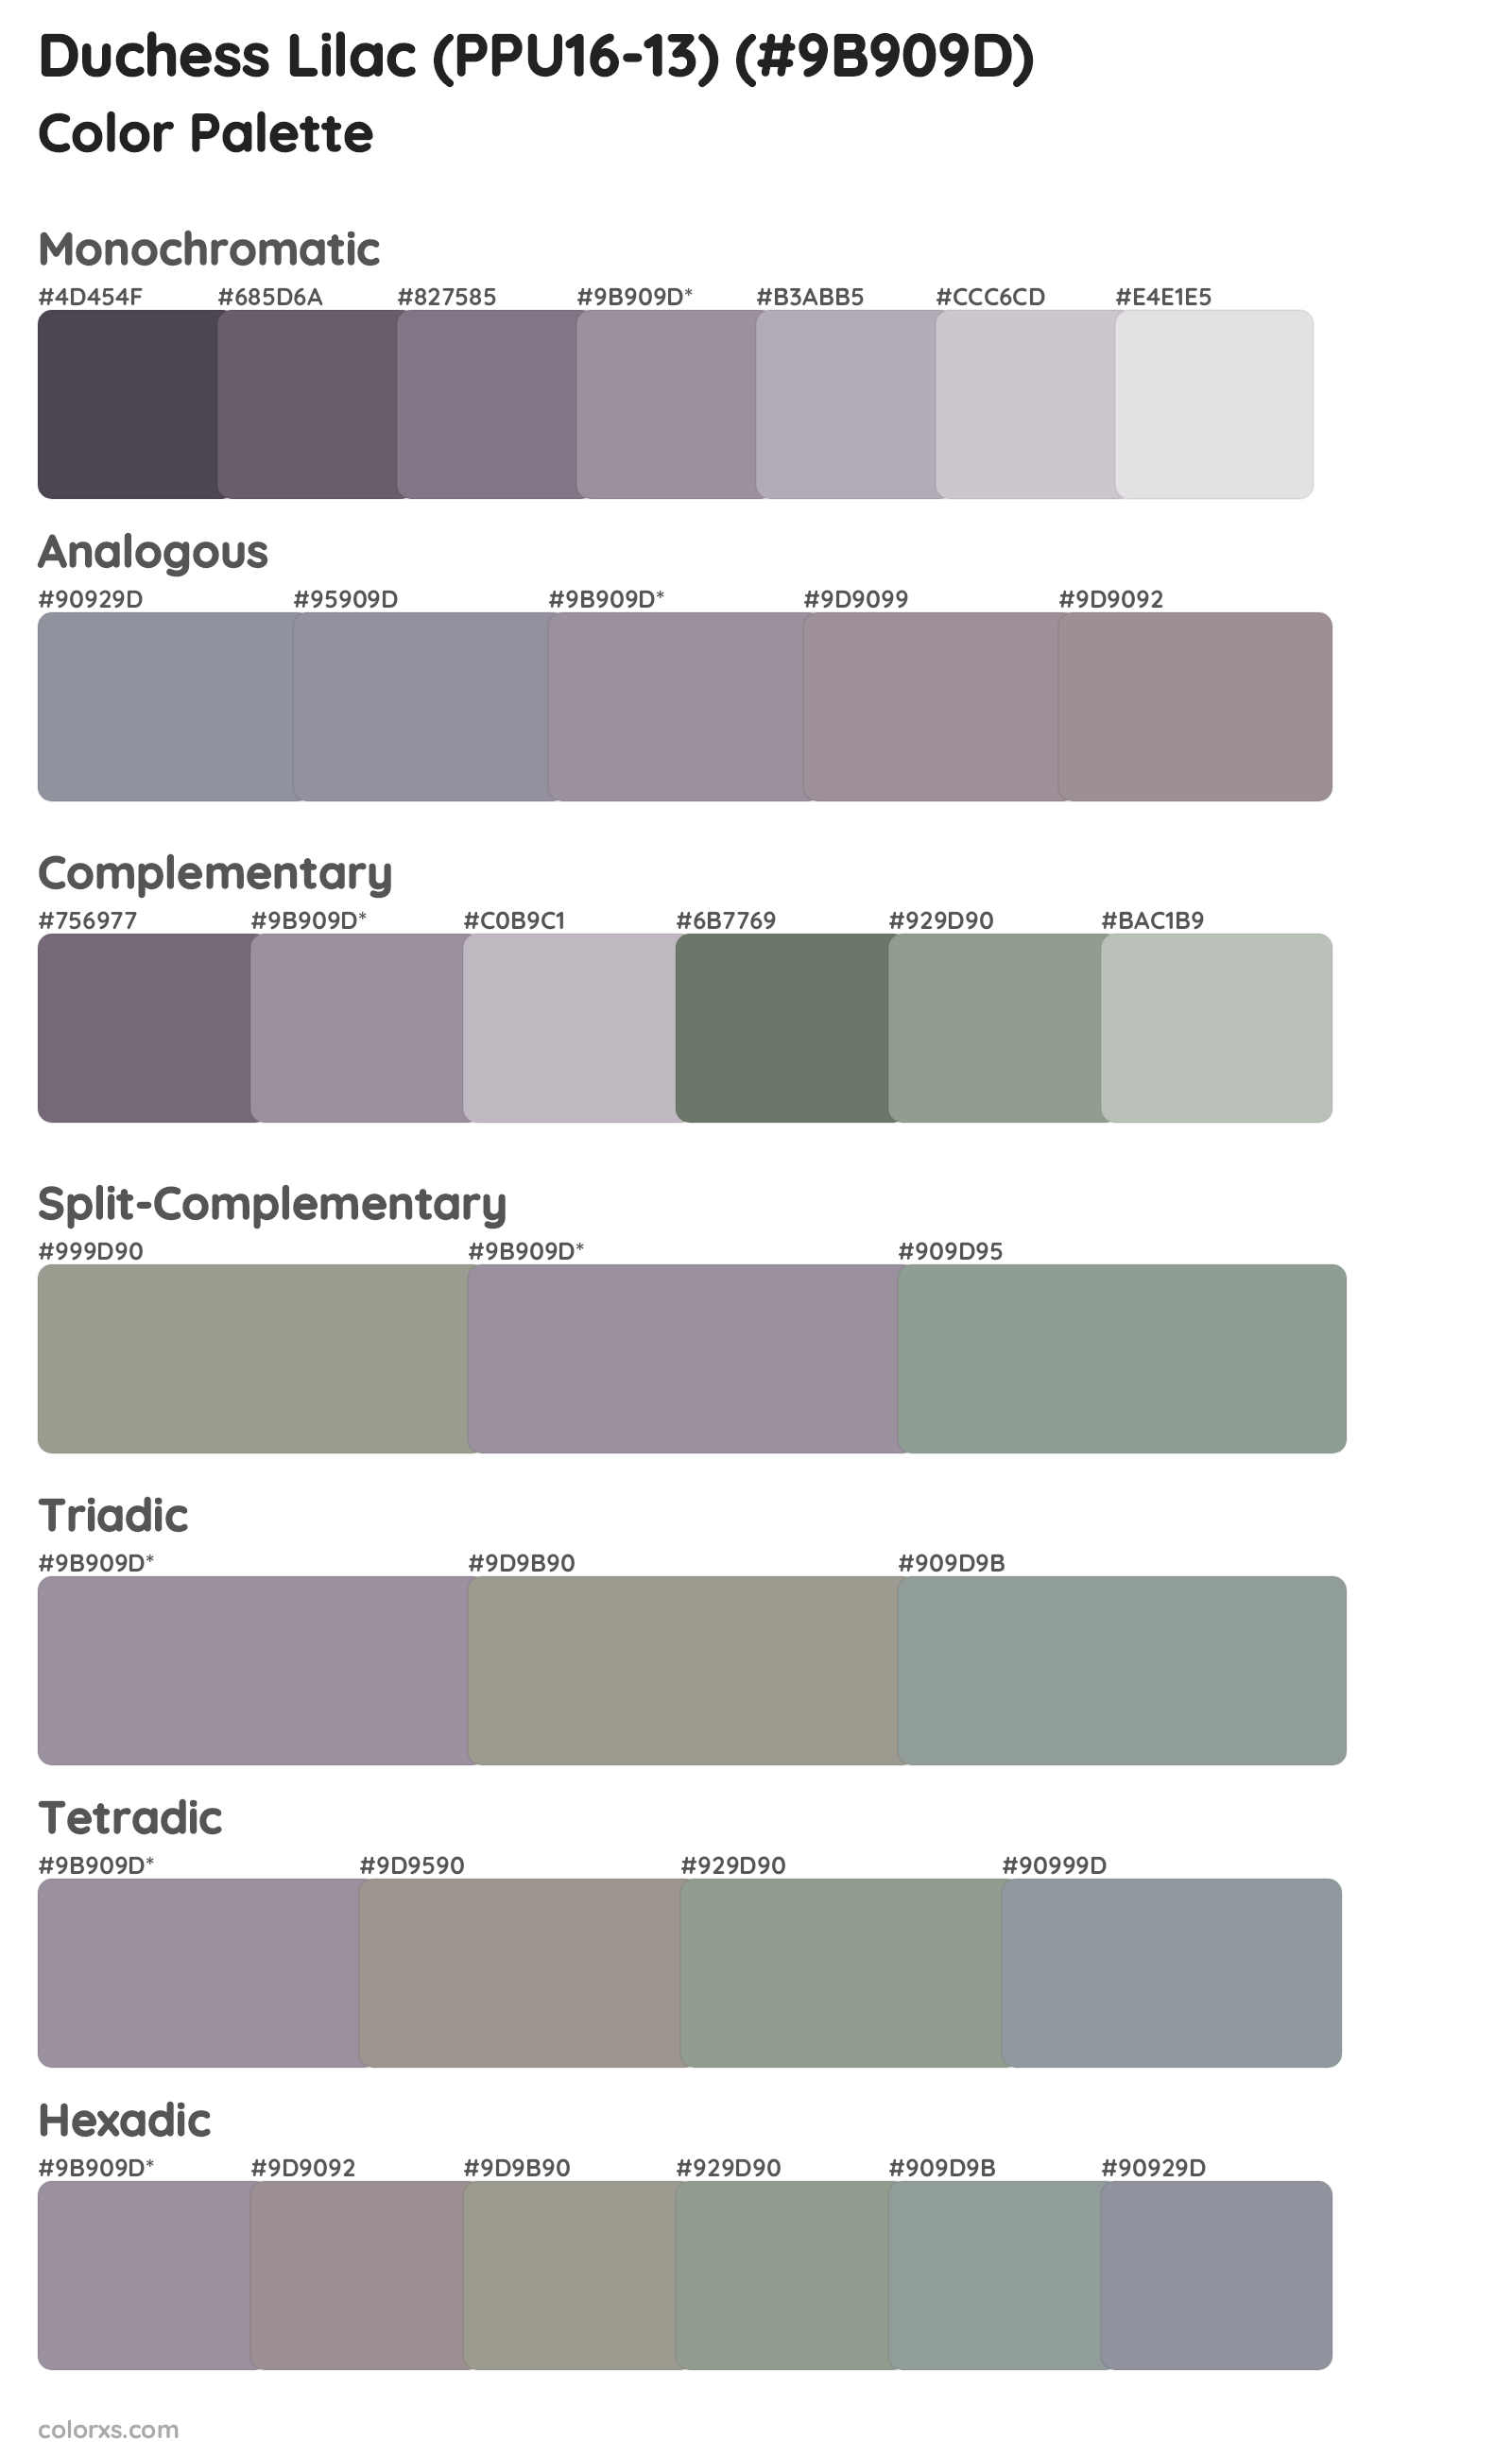 Duchess Lilac (PPU16-13) Color Scheme Palettes